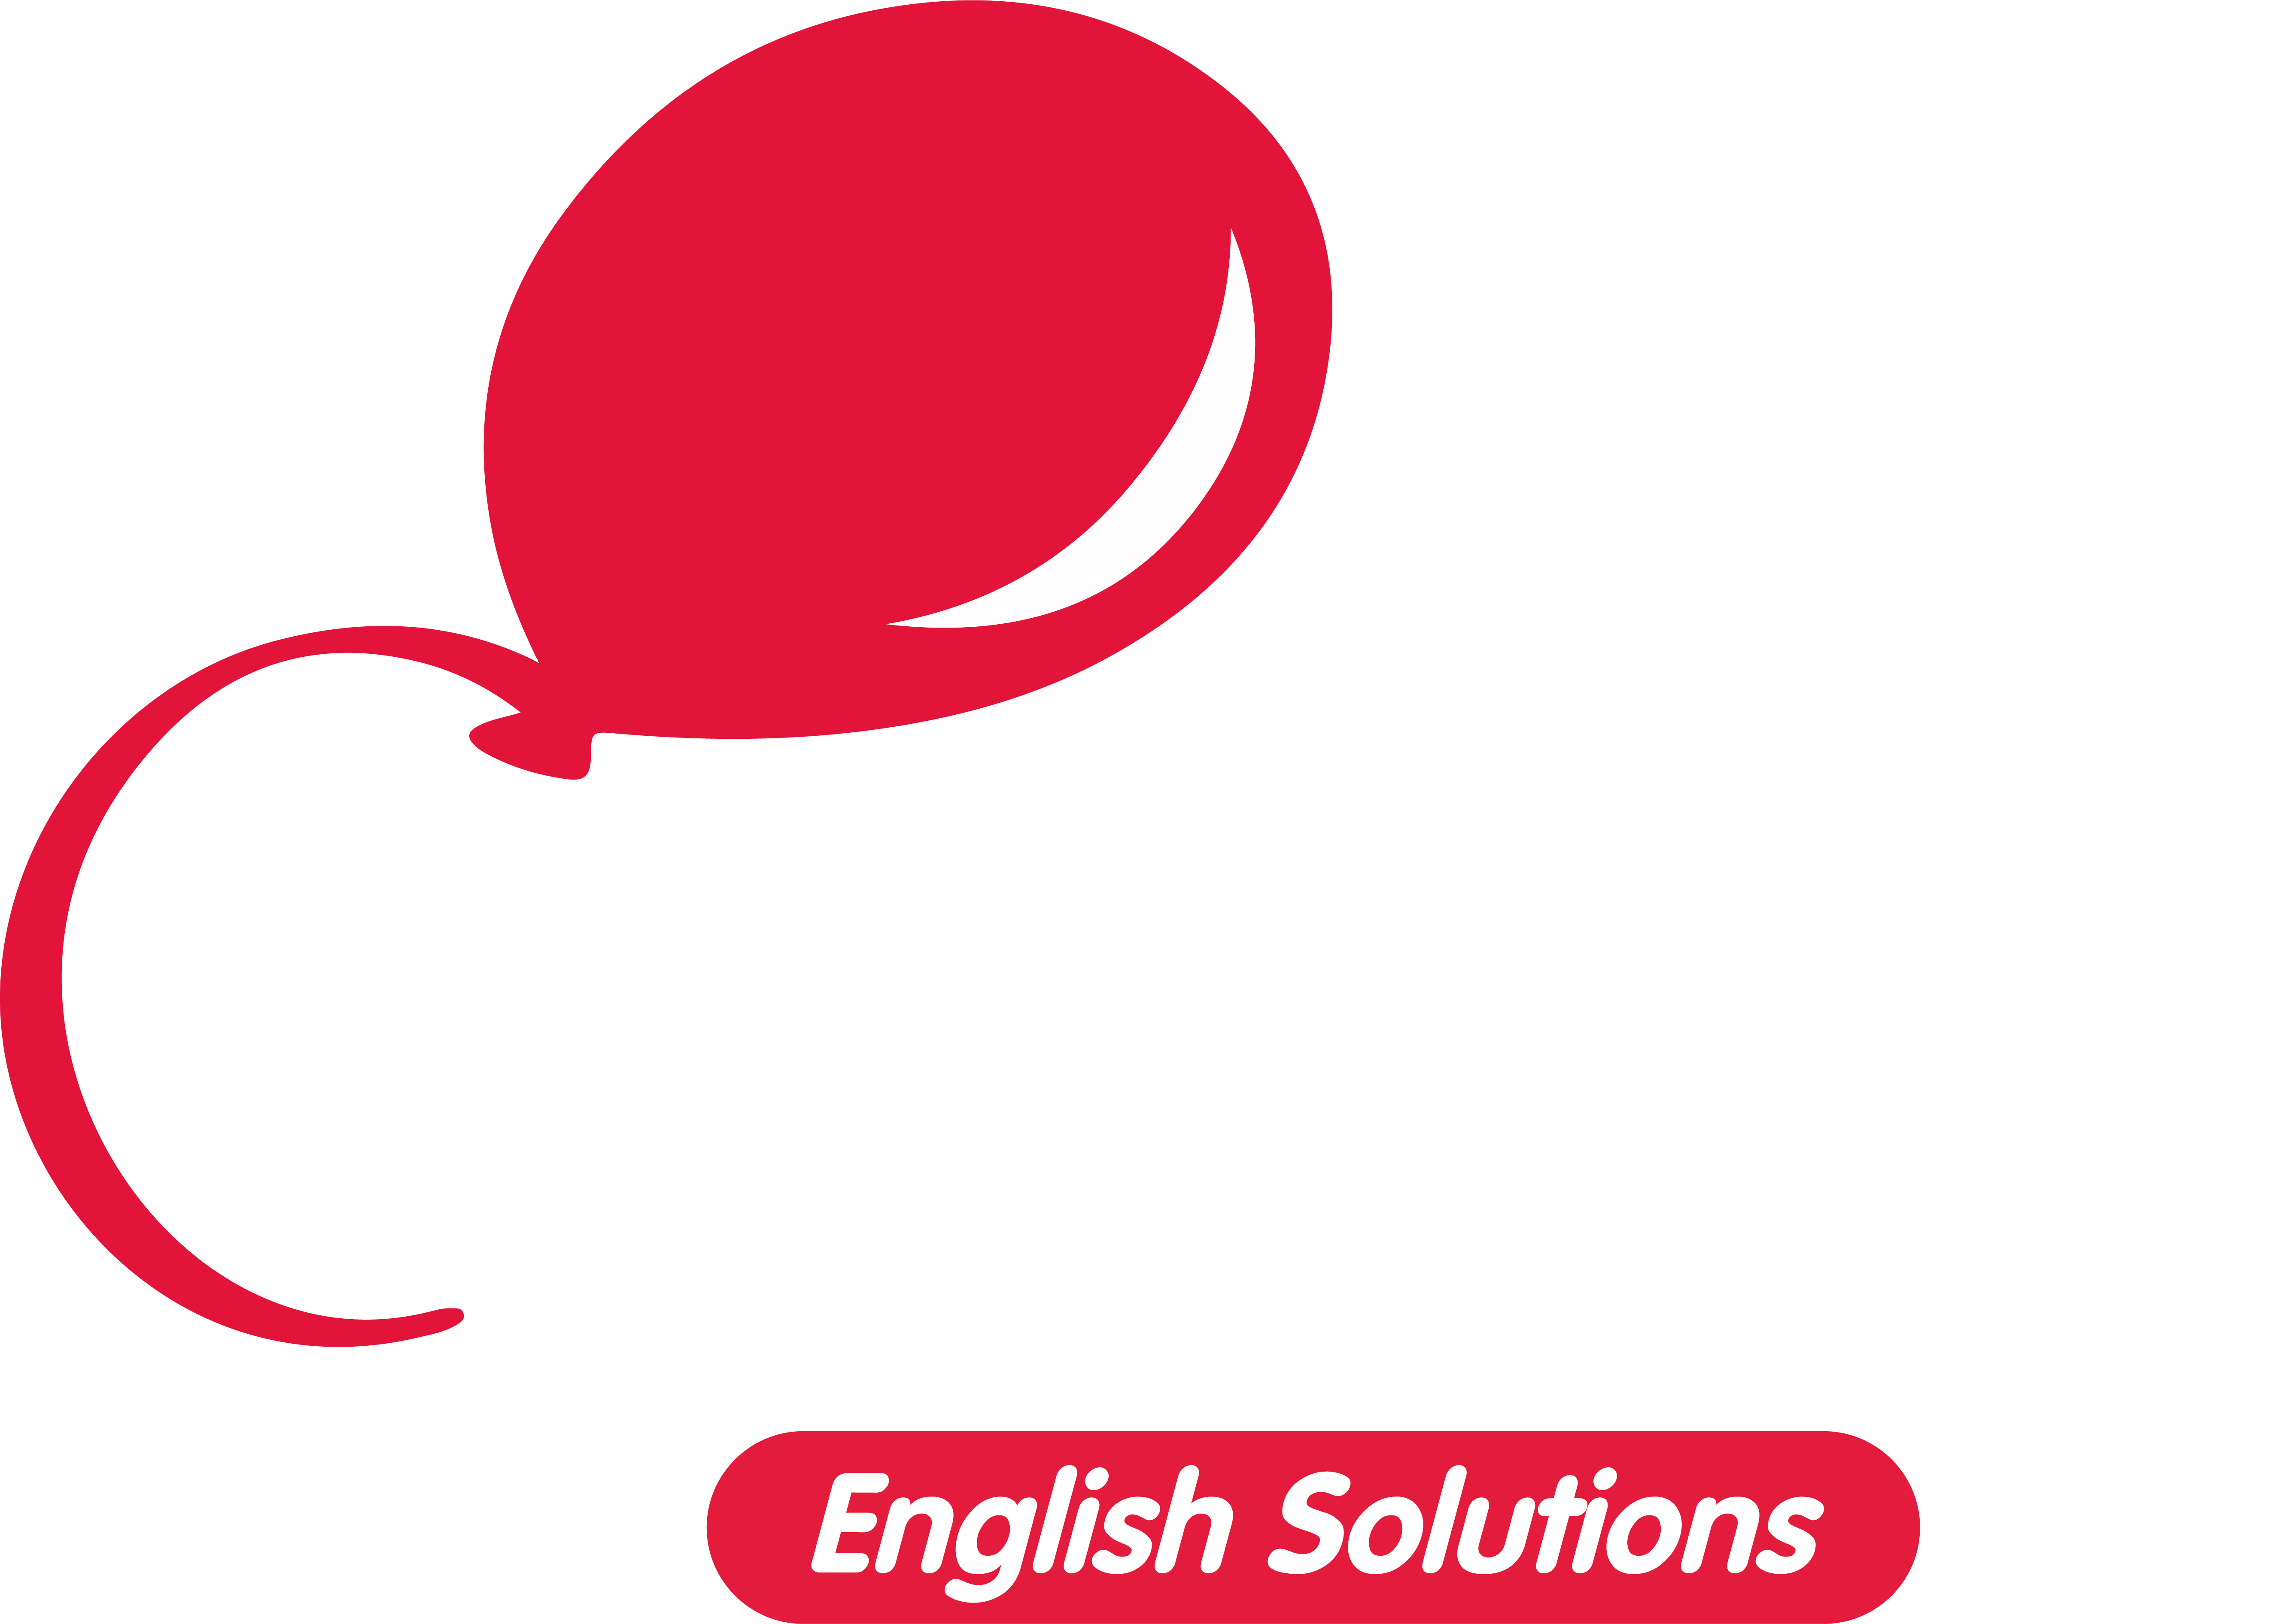 Logo Red Balloon